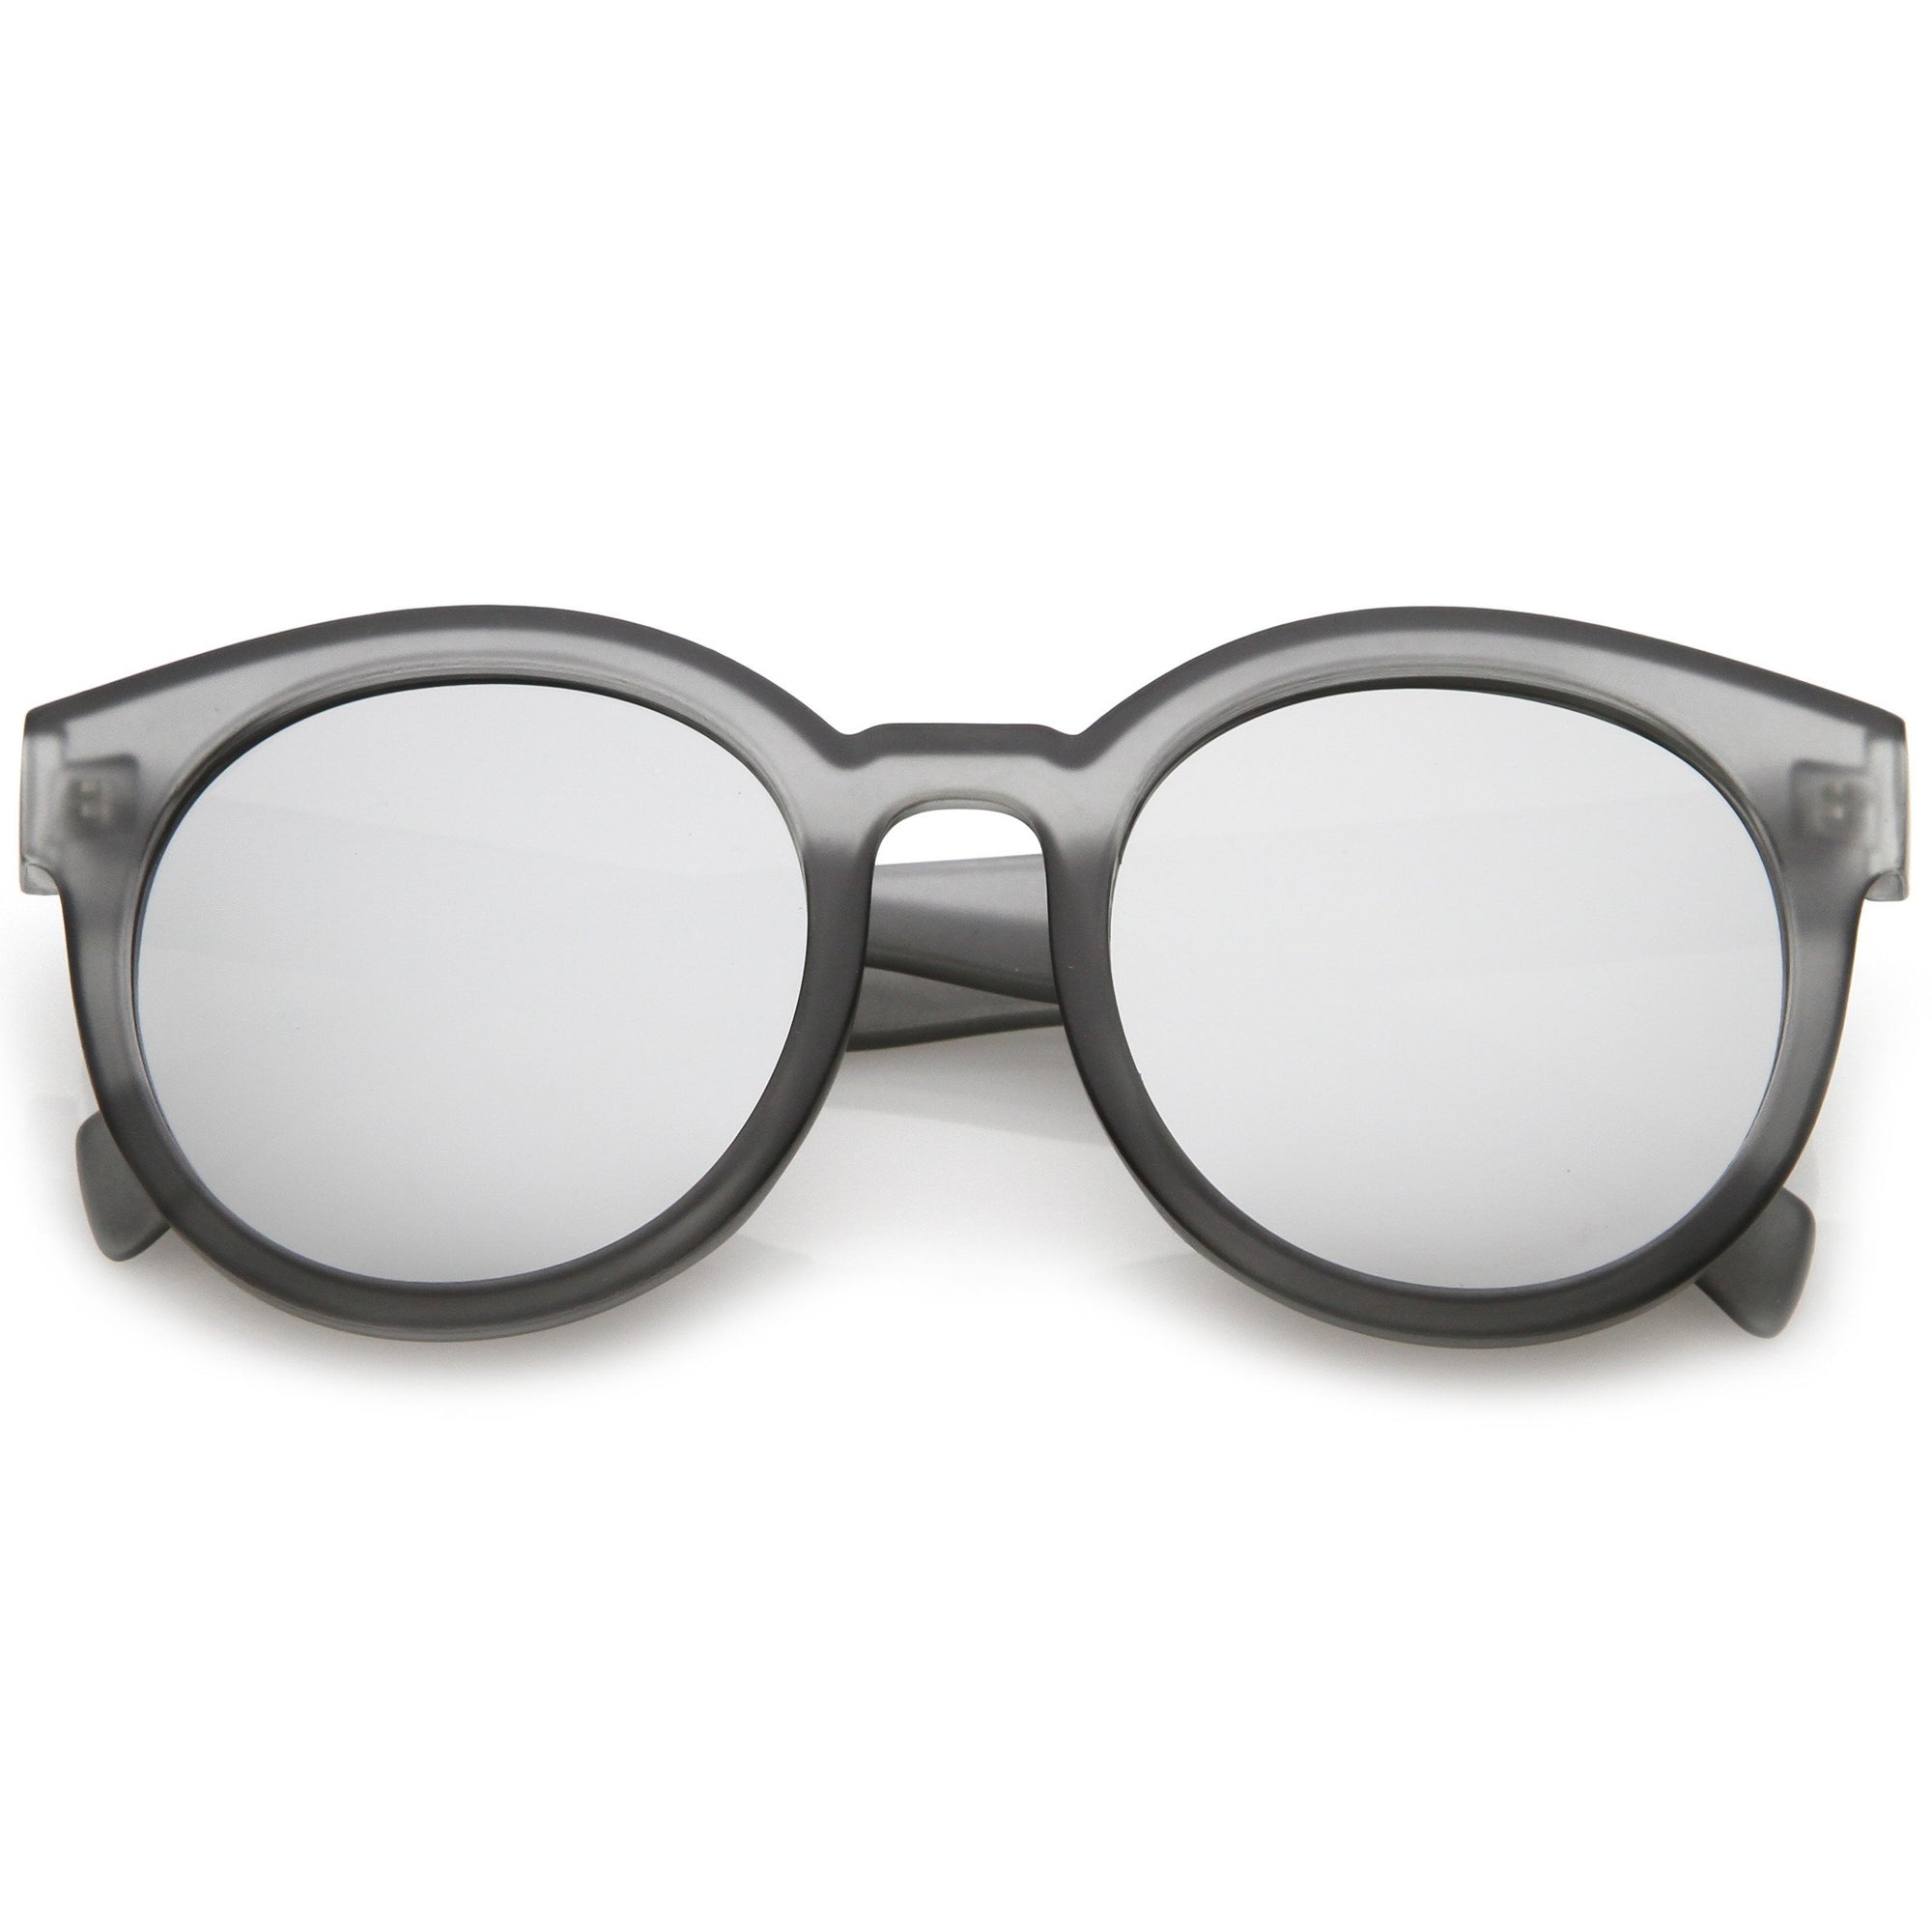 Retro Round Translucent Mirrored Lens Sunglasses - zeroUV